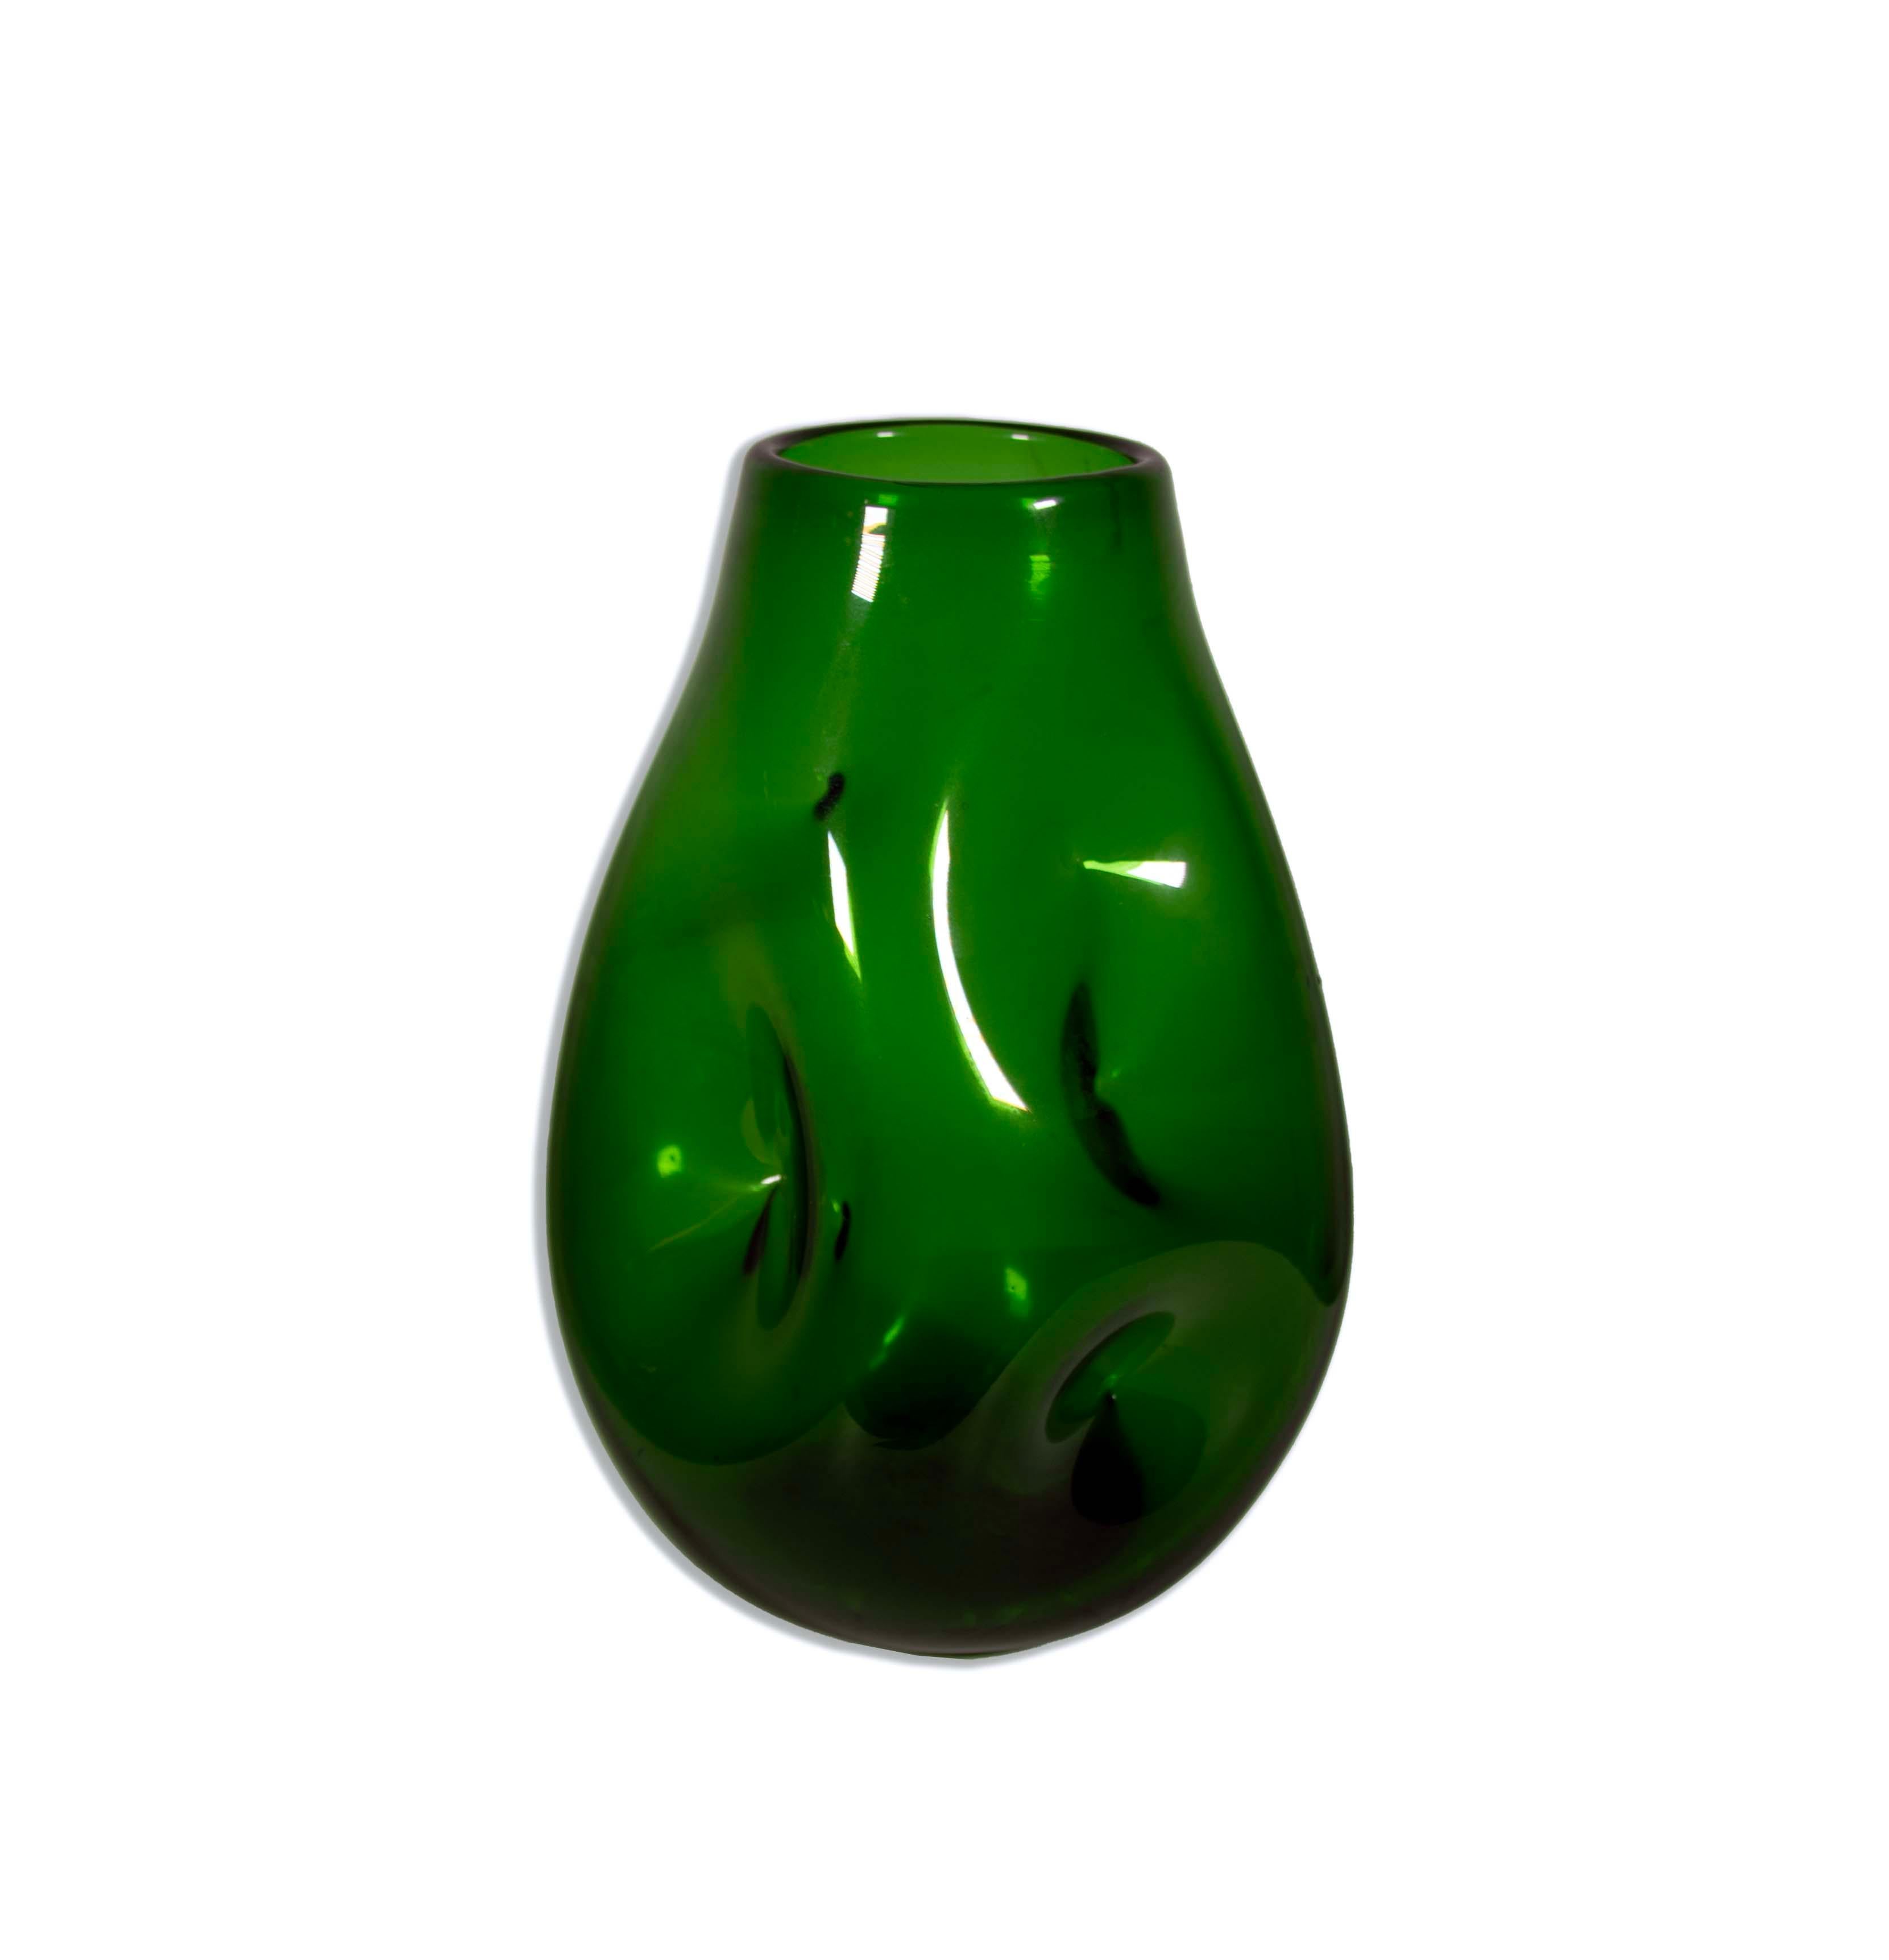 Die Blenko Emerald Green Pinched Glass Vase, Modell 921L, ist ein bemerkenswertes Stück moderner Glaskunst aus der Mitte des letzten Jahrhunderts. Diese von der renommierten Blenko Glass Company gefertigte Vase besticht durch ihre gekniffene Form in